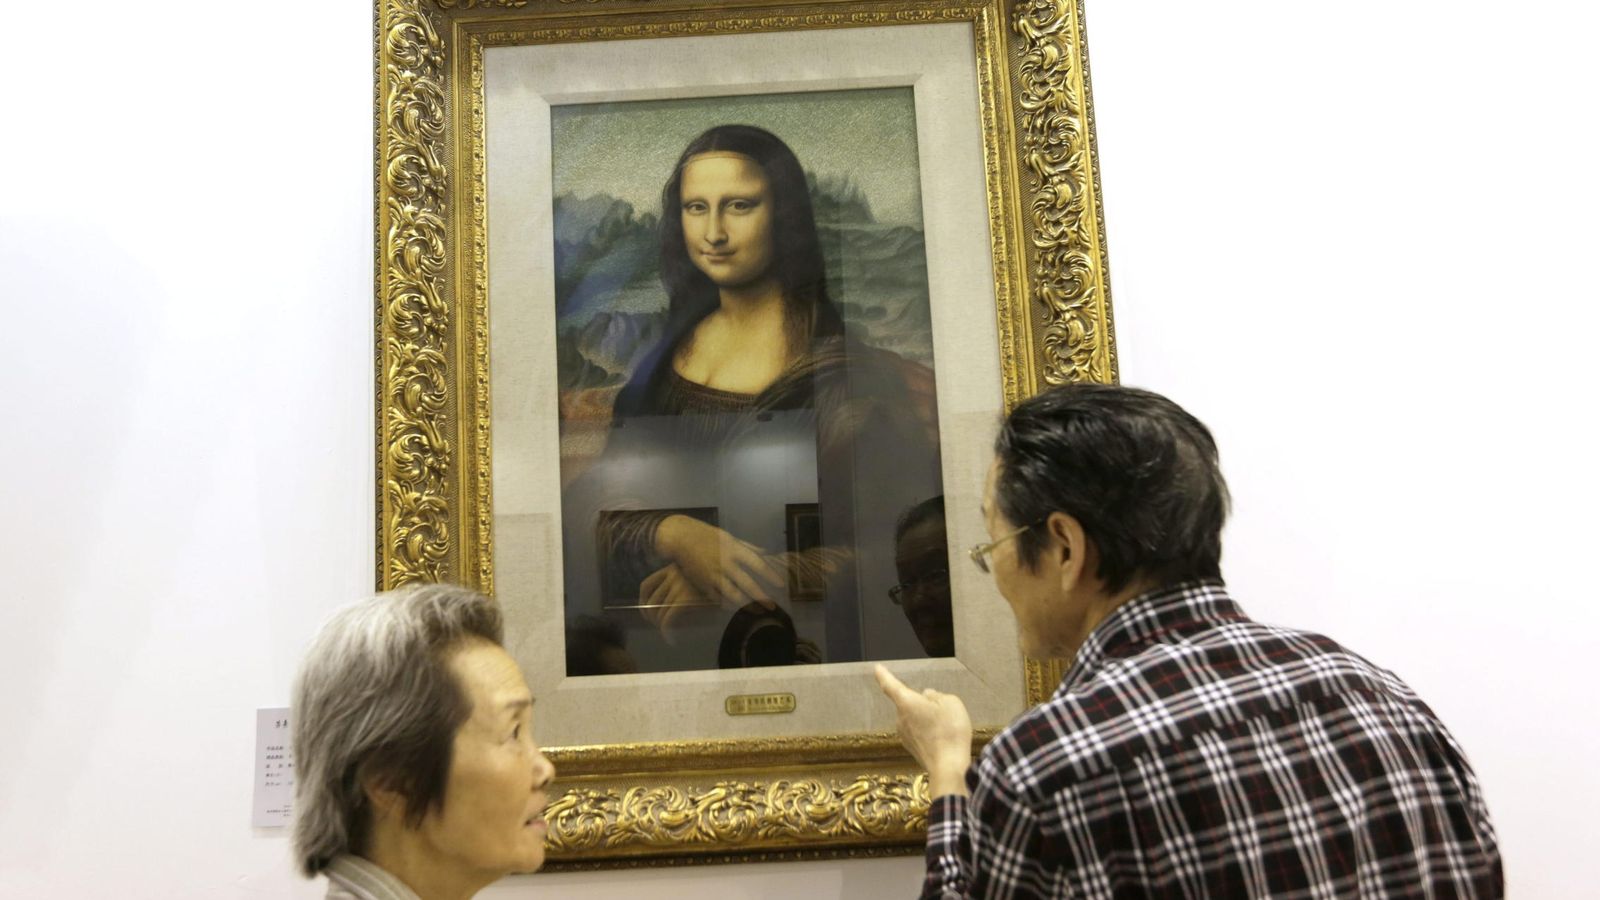 Foto: Visitantes admiran una réplica hecha en bordado de la Mona Lisa perteneciente al Museo de Arte de Bordados. (EFE)